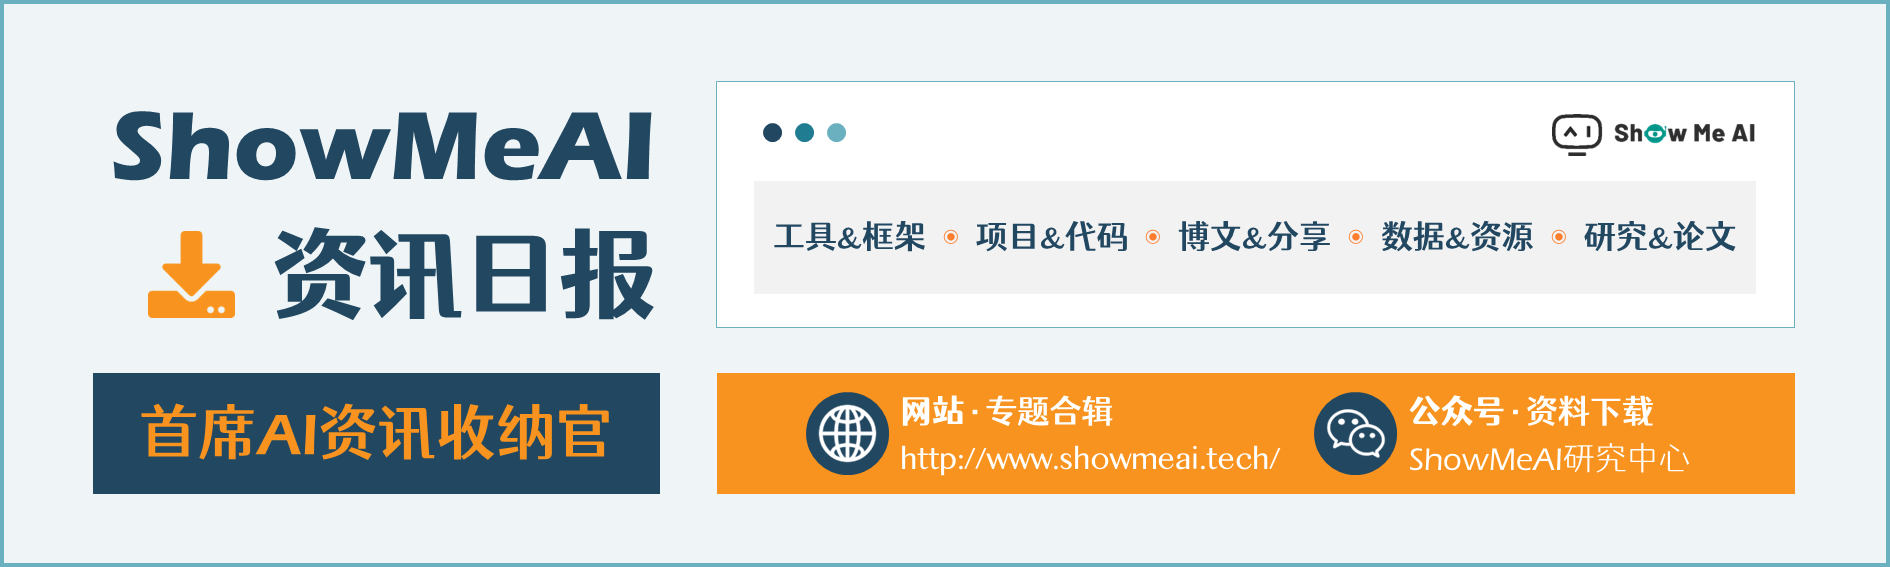 人工智能 | ShowMeAI资讯日报 #2022.06.29